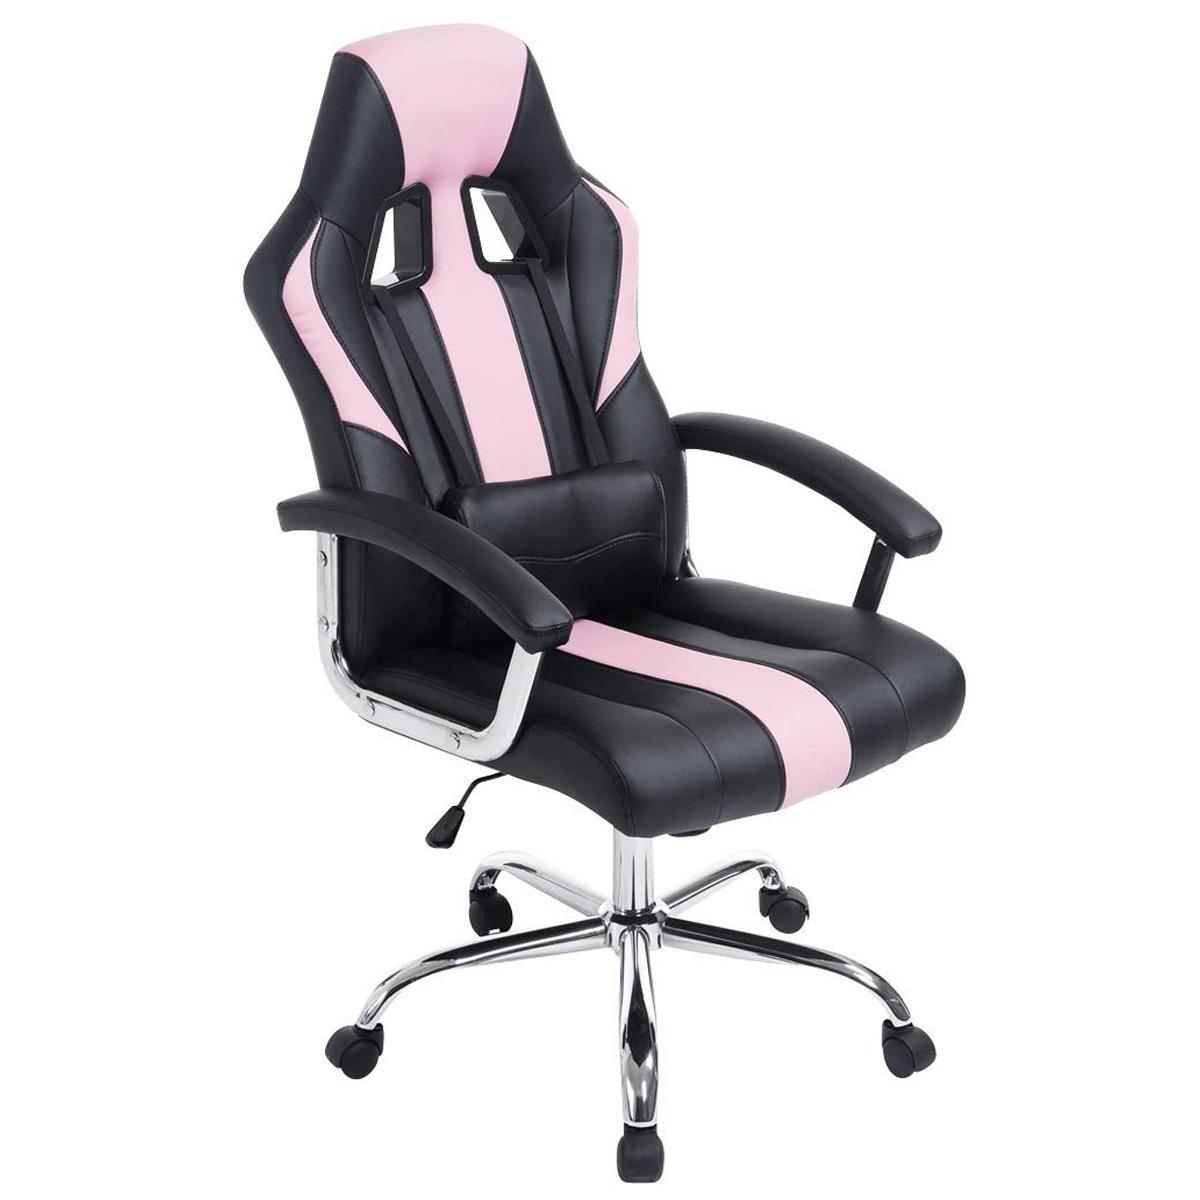 Gaming-Stuhl INDOS, sportliches Design, hoher Komfort, Metallfußkreuz, Lederbezug, Farbe Schwarz / Pink